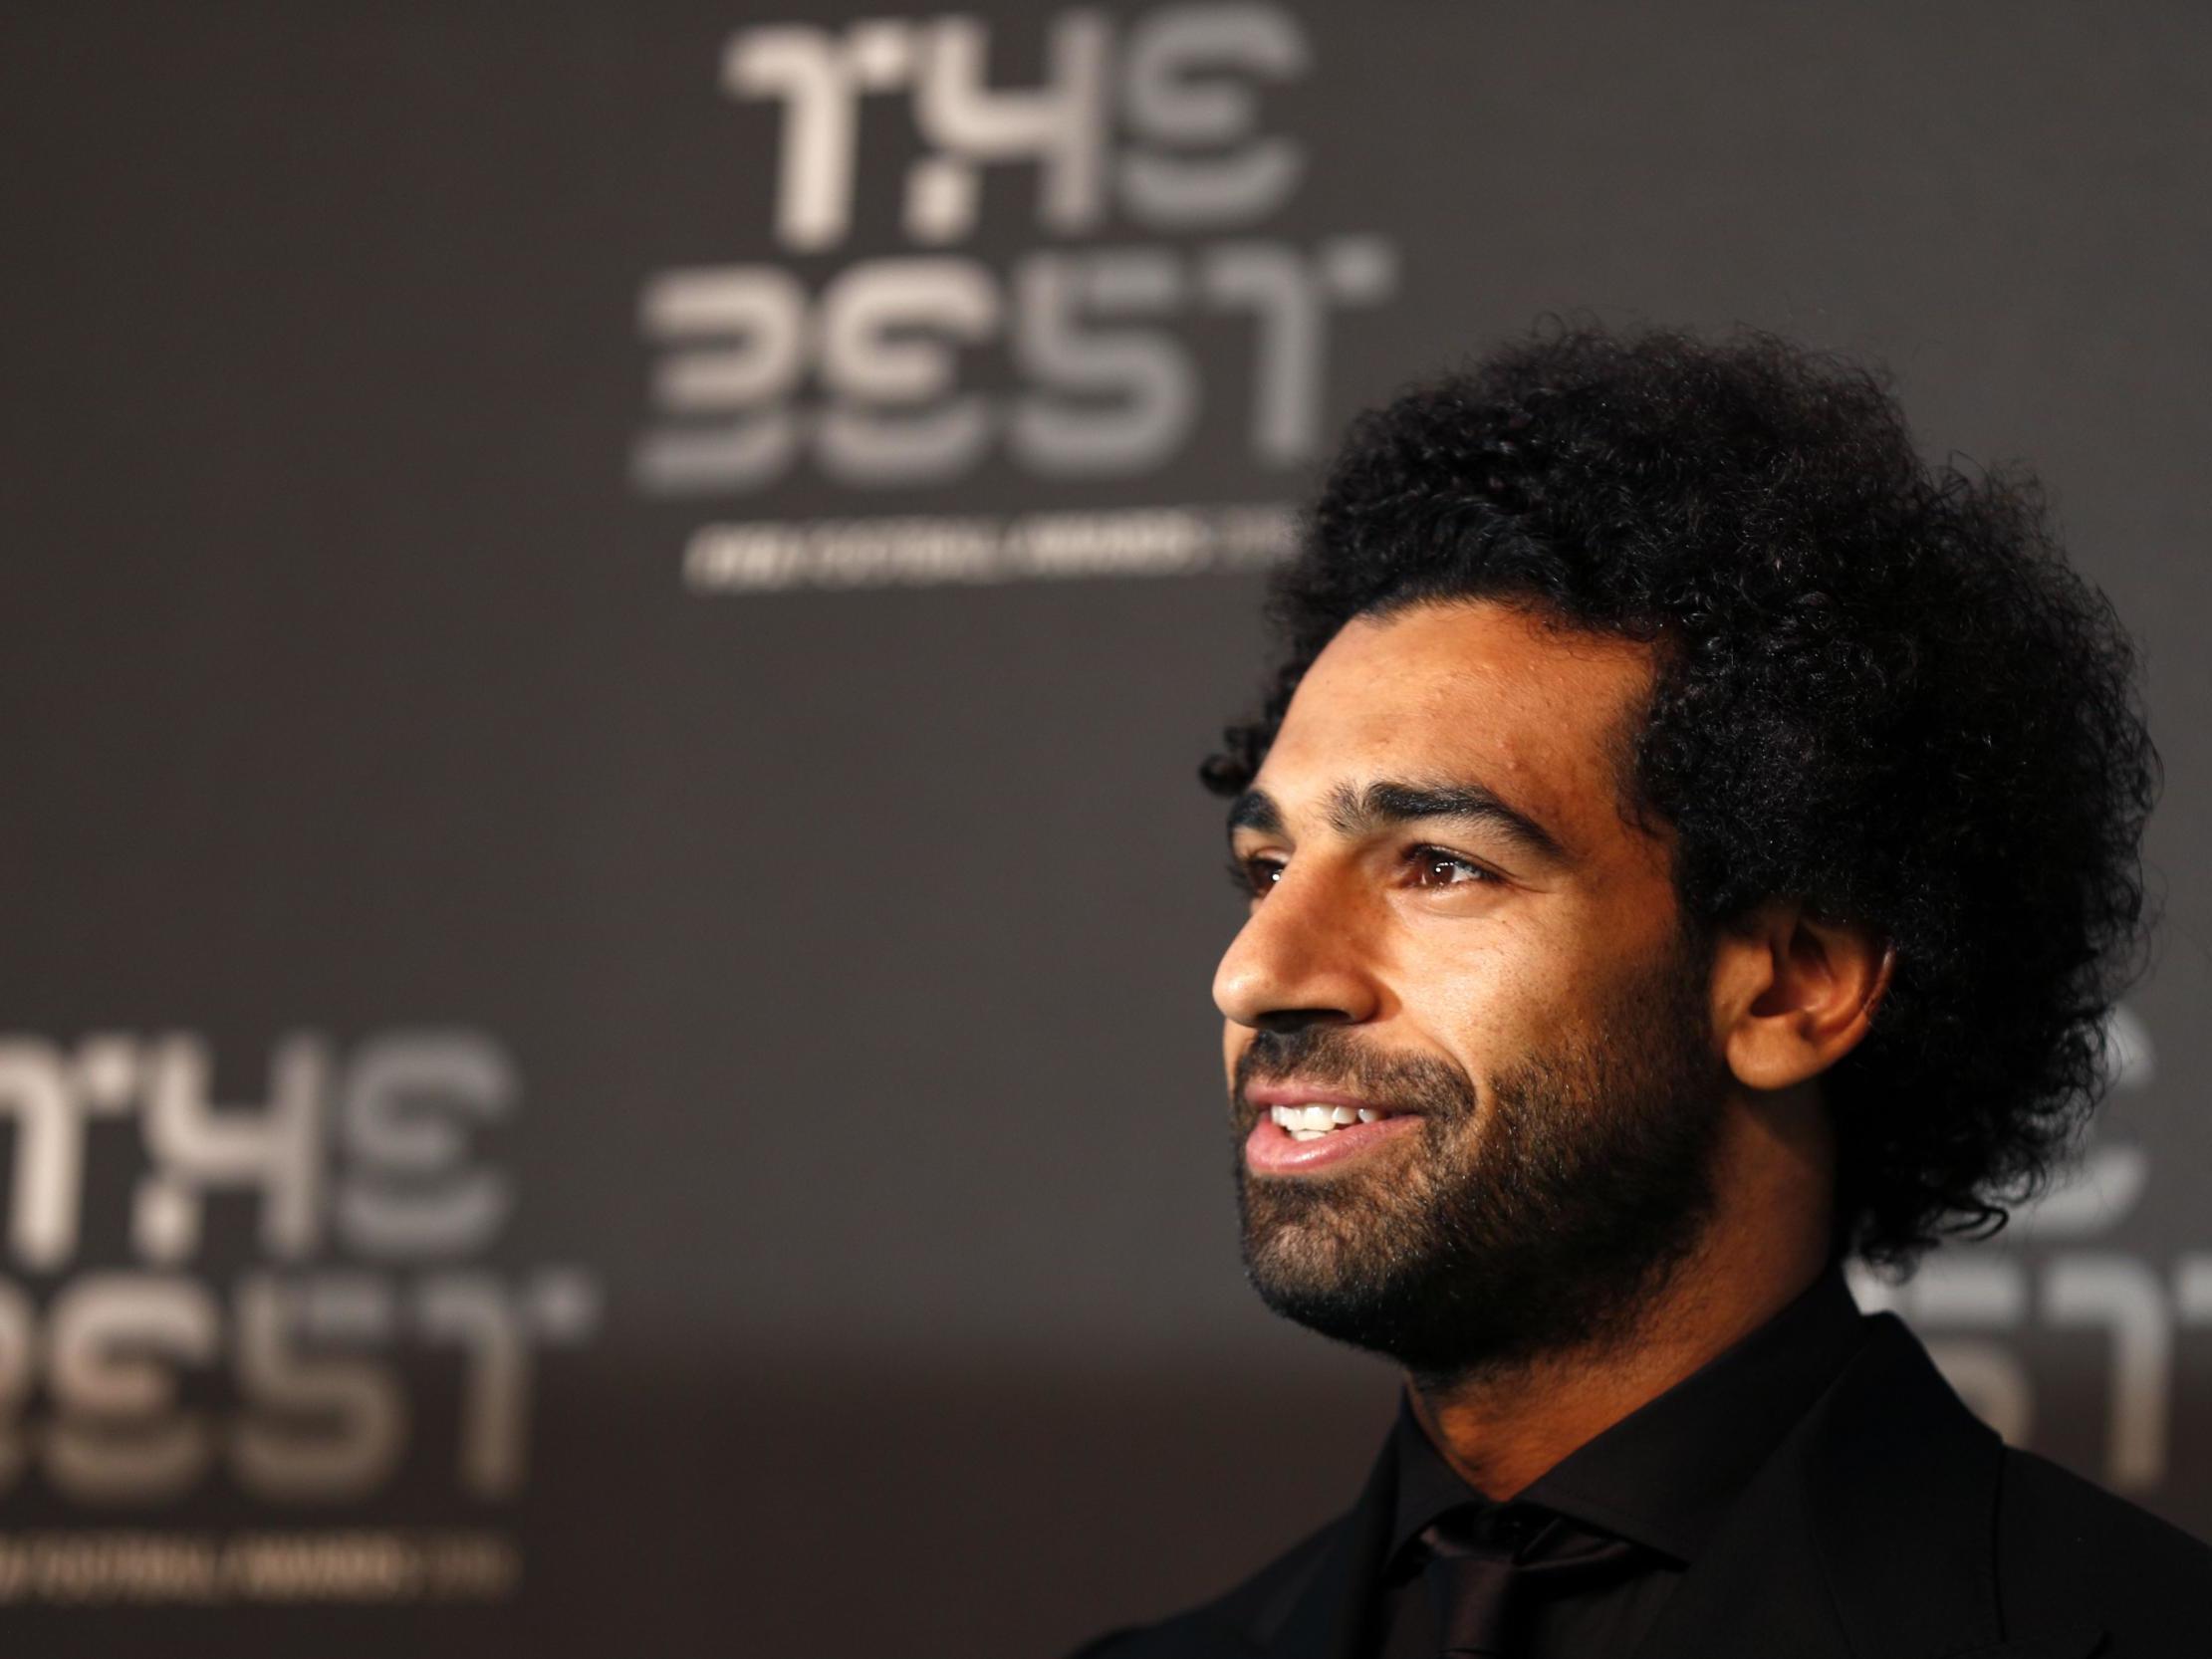 Mohamed Salah won the Fifa Puskás Award on Tuesday night